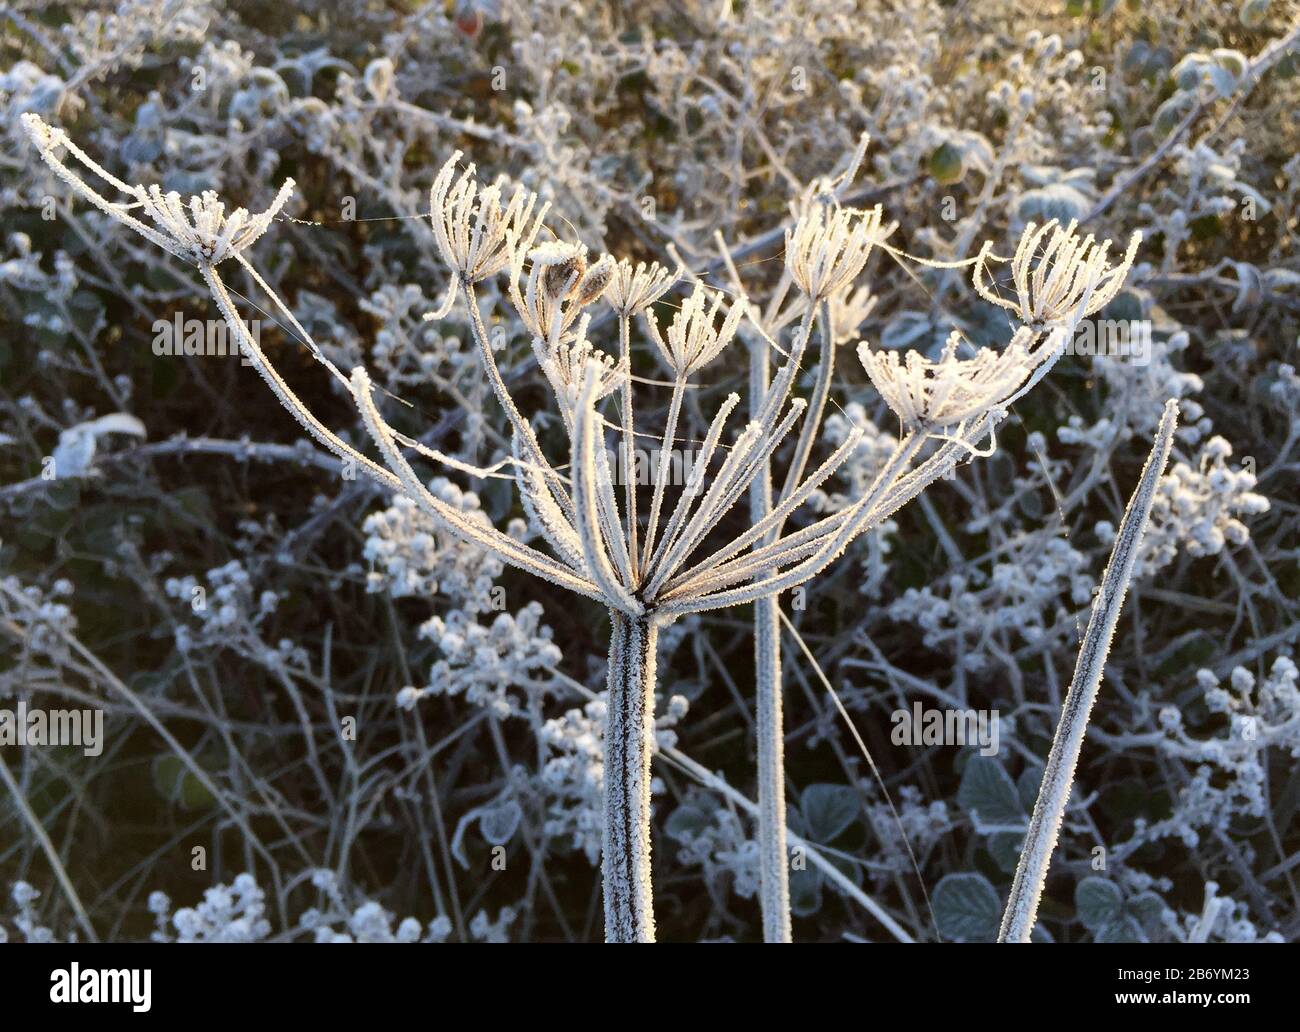 Hoar frost covering vegetation Stock Photo